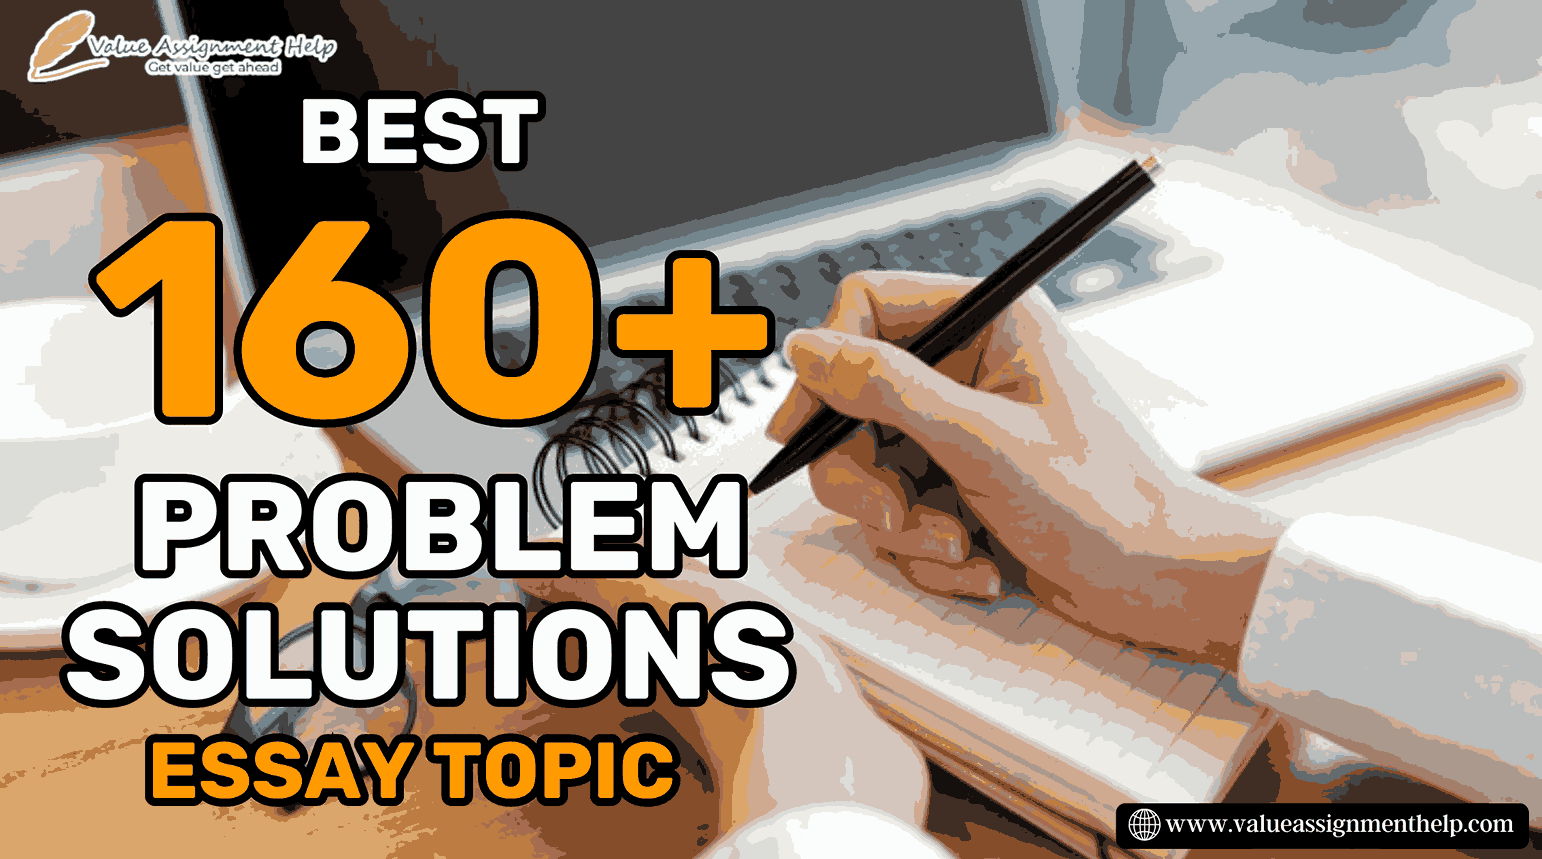  Best 160+ Problem Solutions essay topics